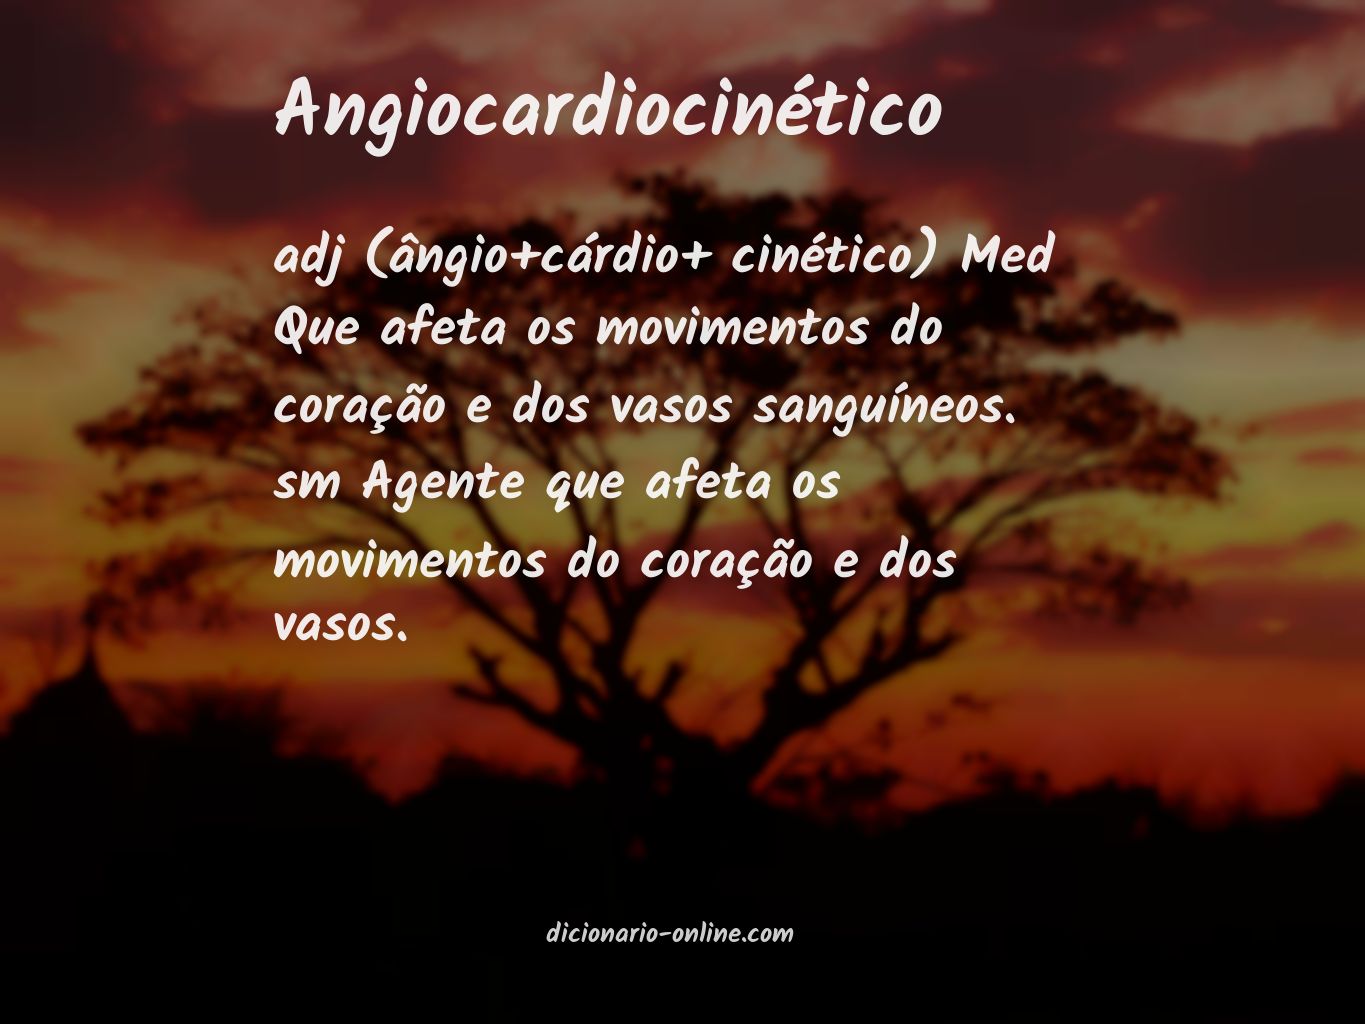 Significado de angiocardiocinético